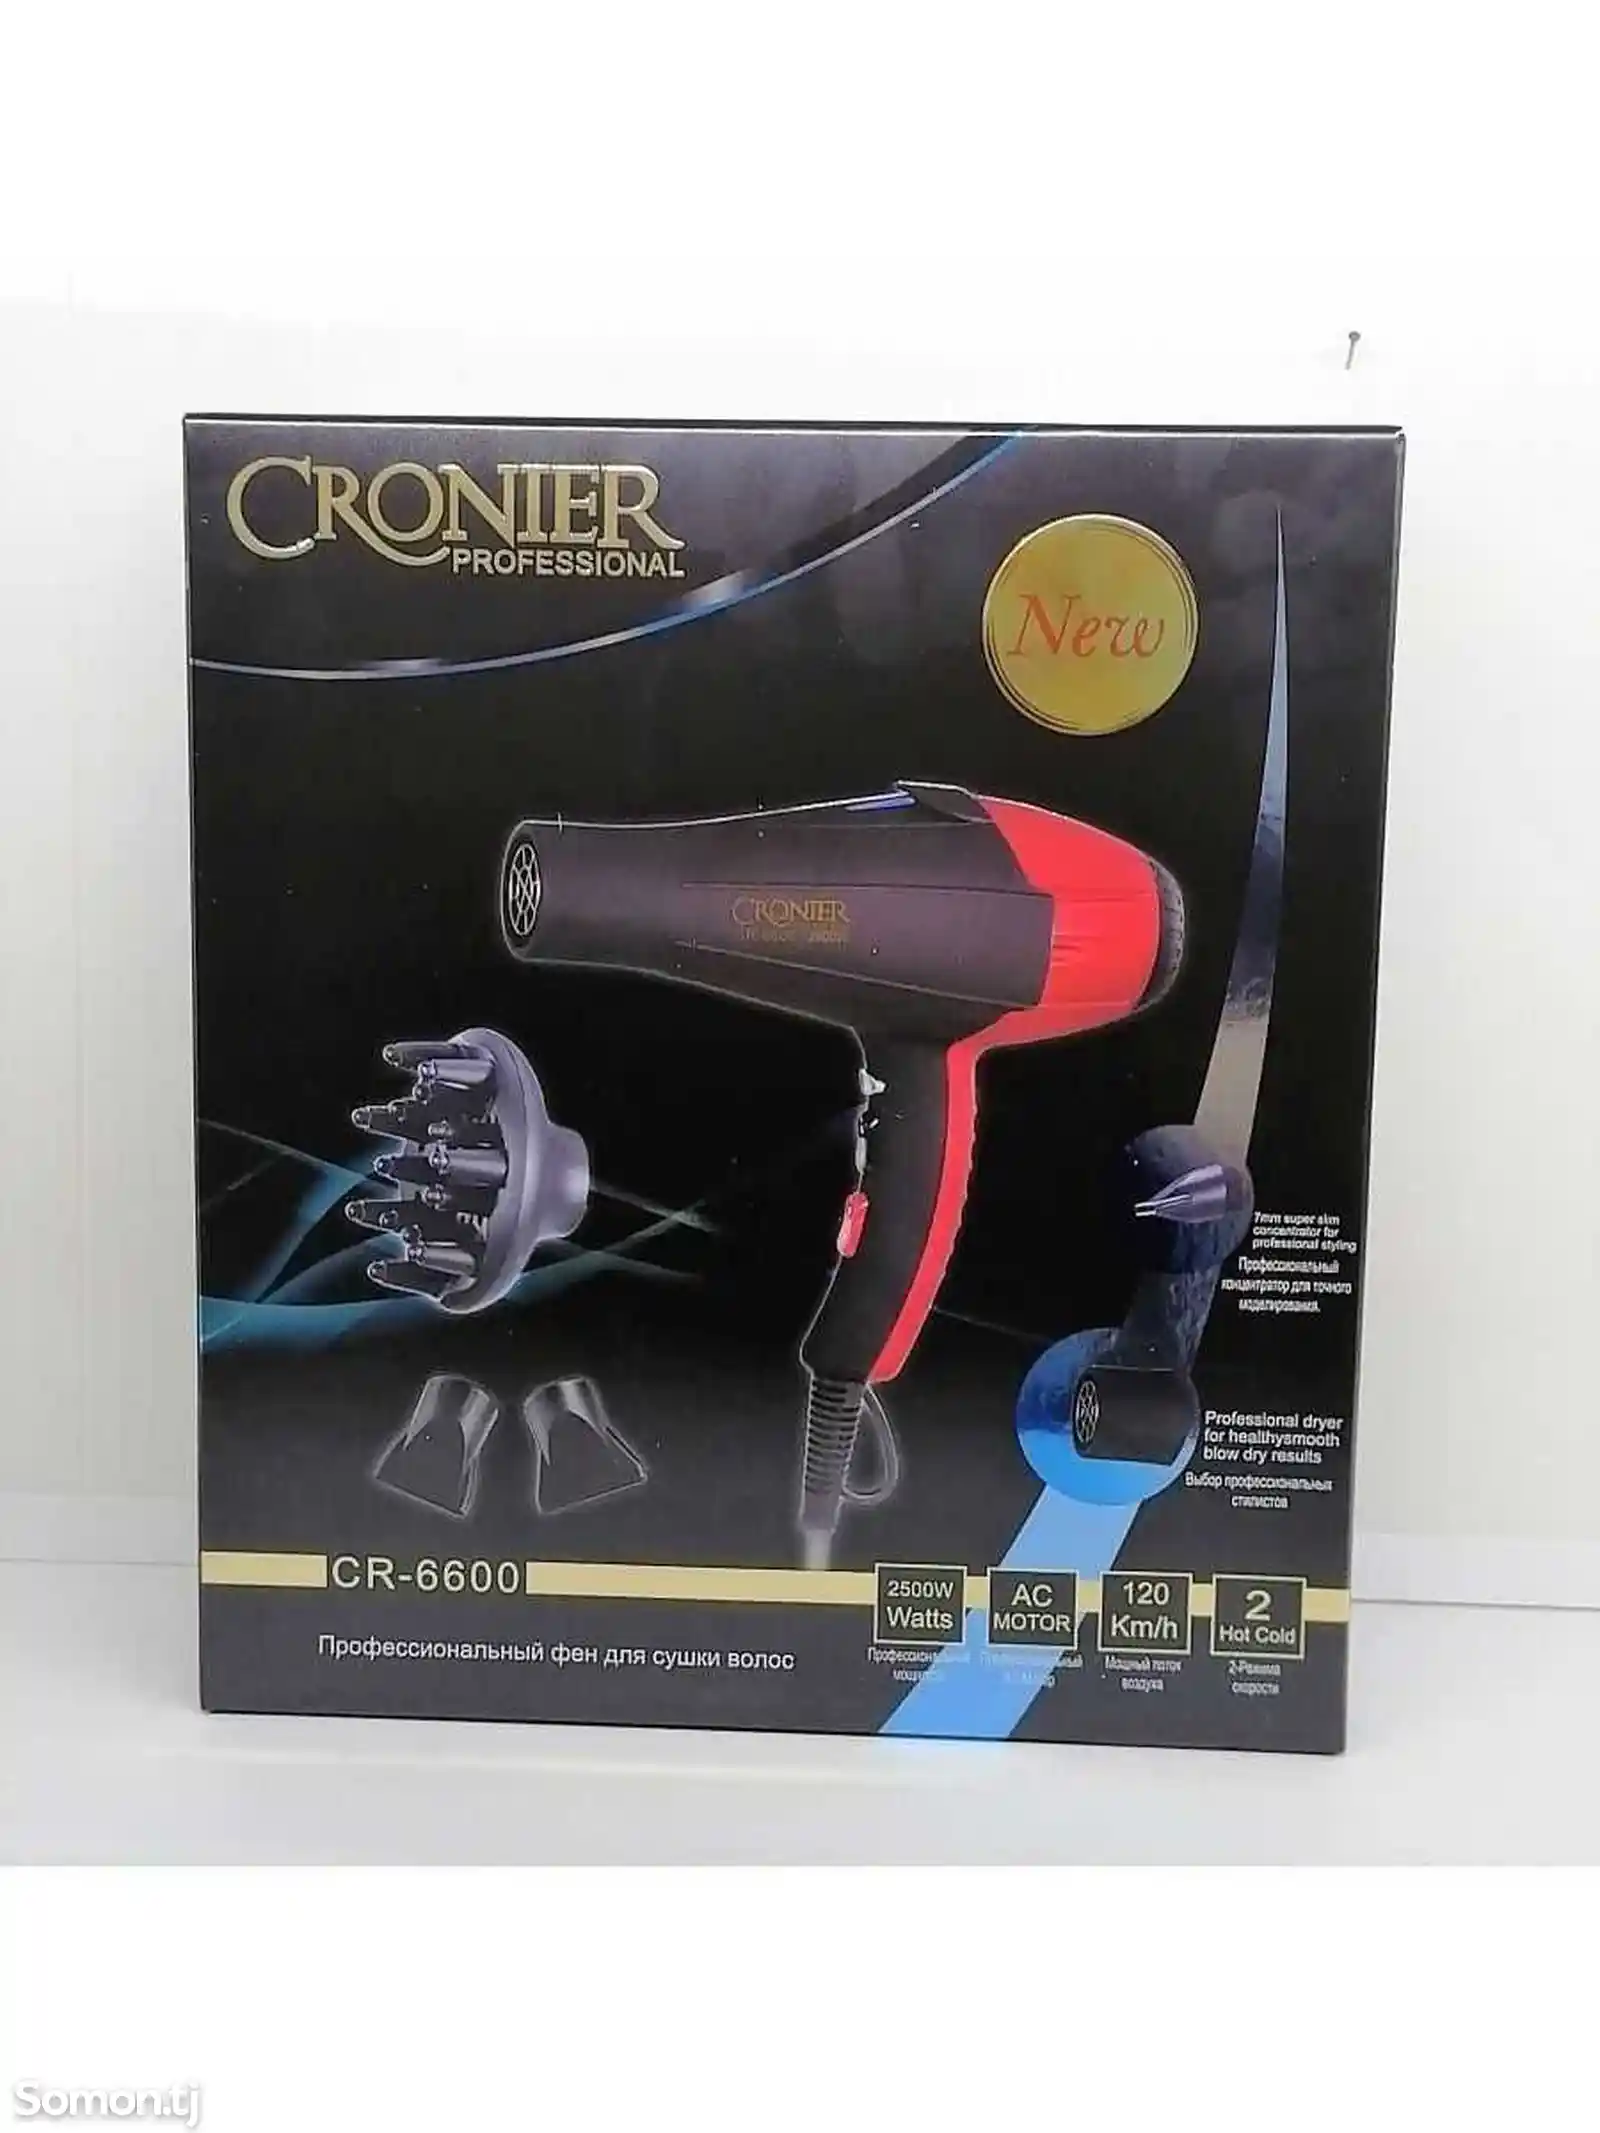 Фен для волос Cronier Сr-6600-2